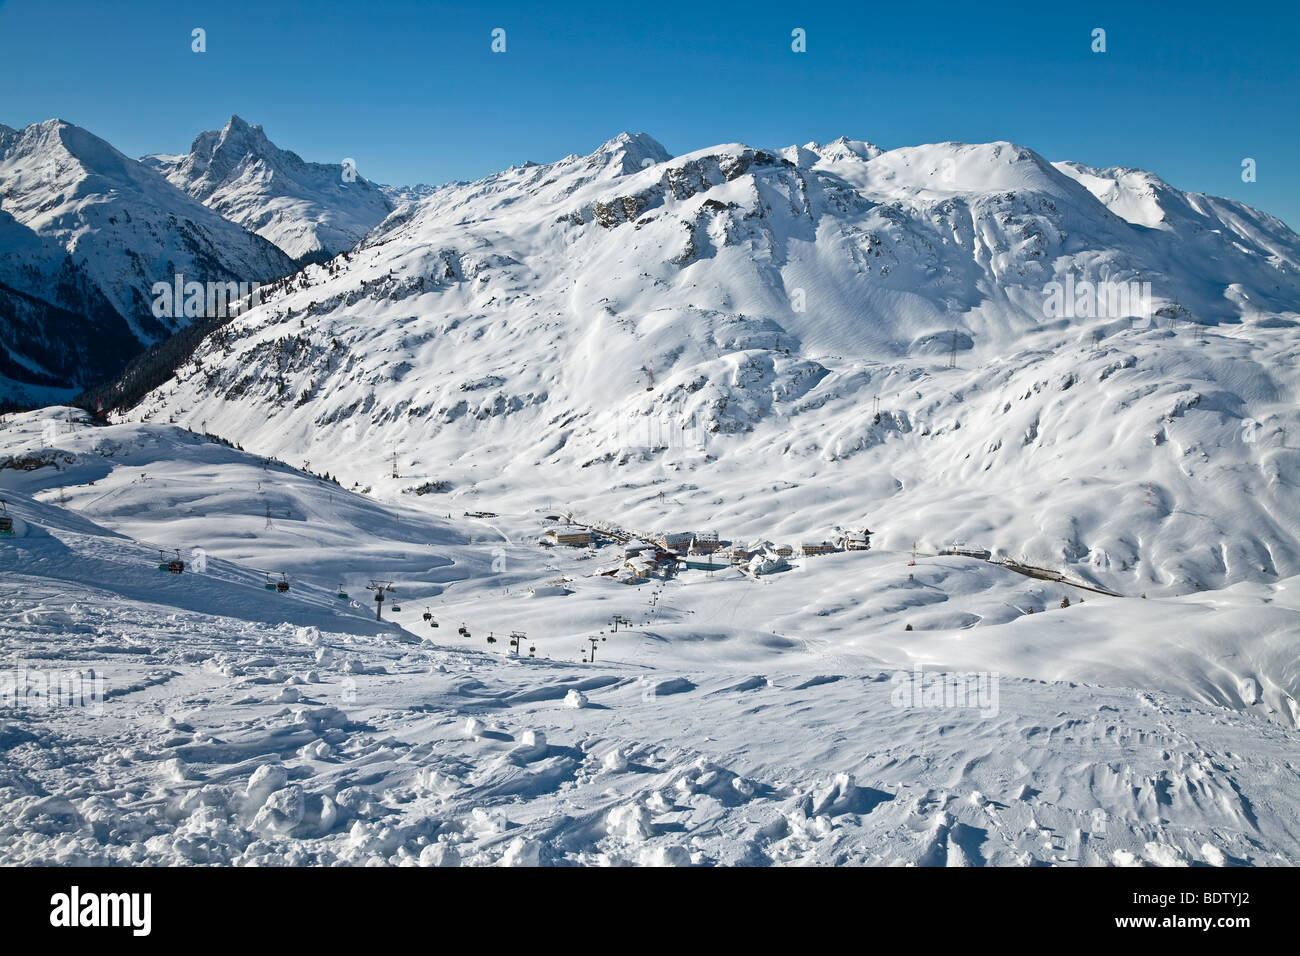 Europa Austria, Tirolo. St. Anton am Arlberg, resort le piste e le gamme della montagna Foto Stock